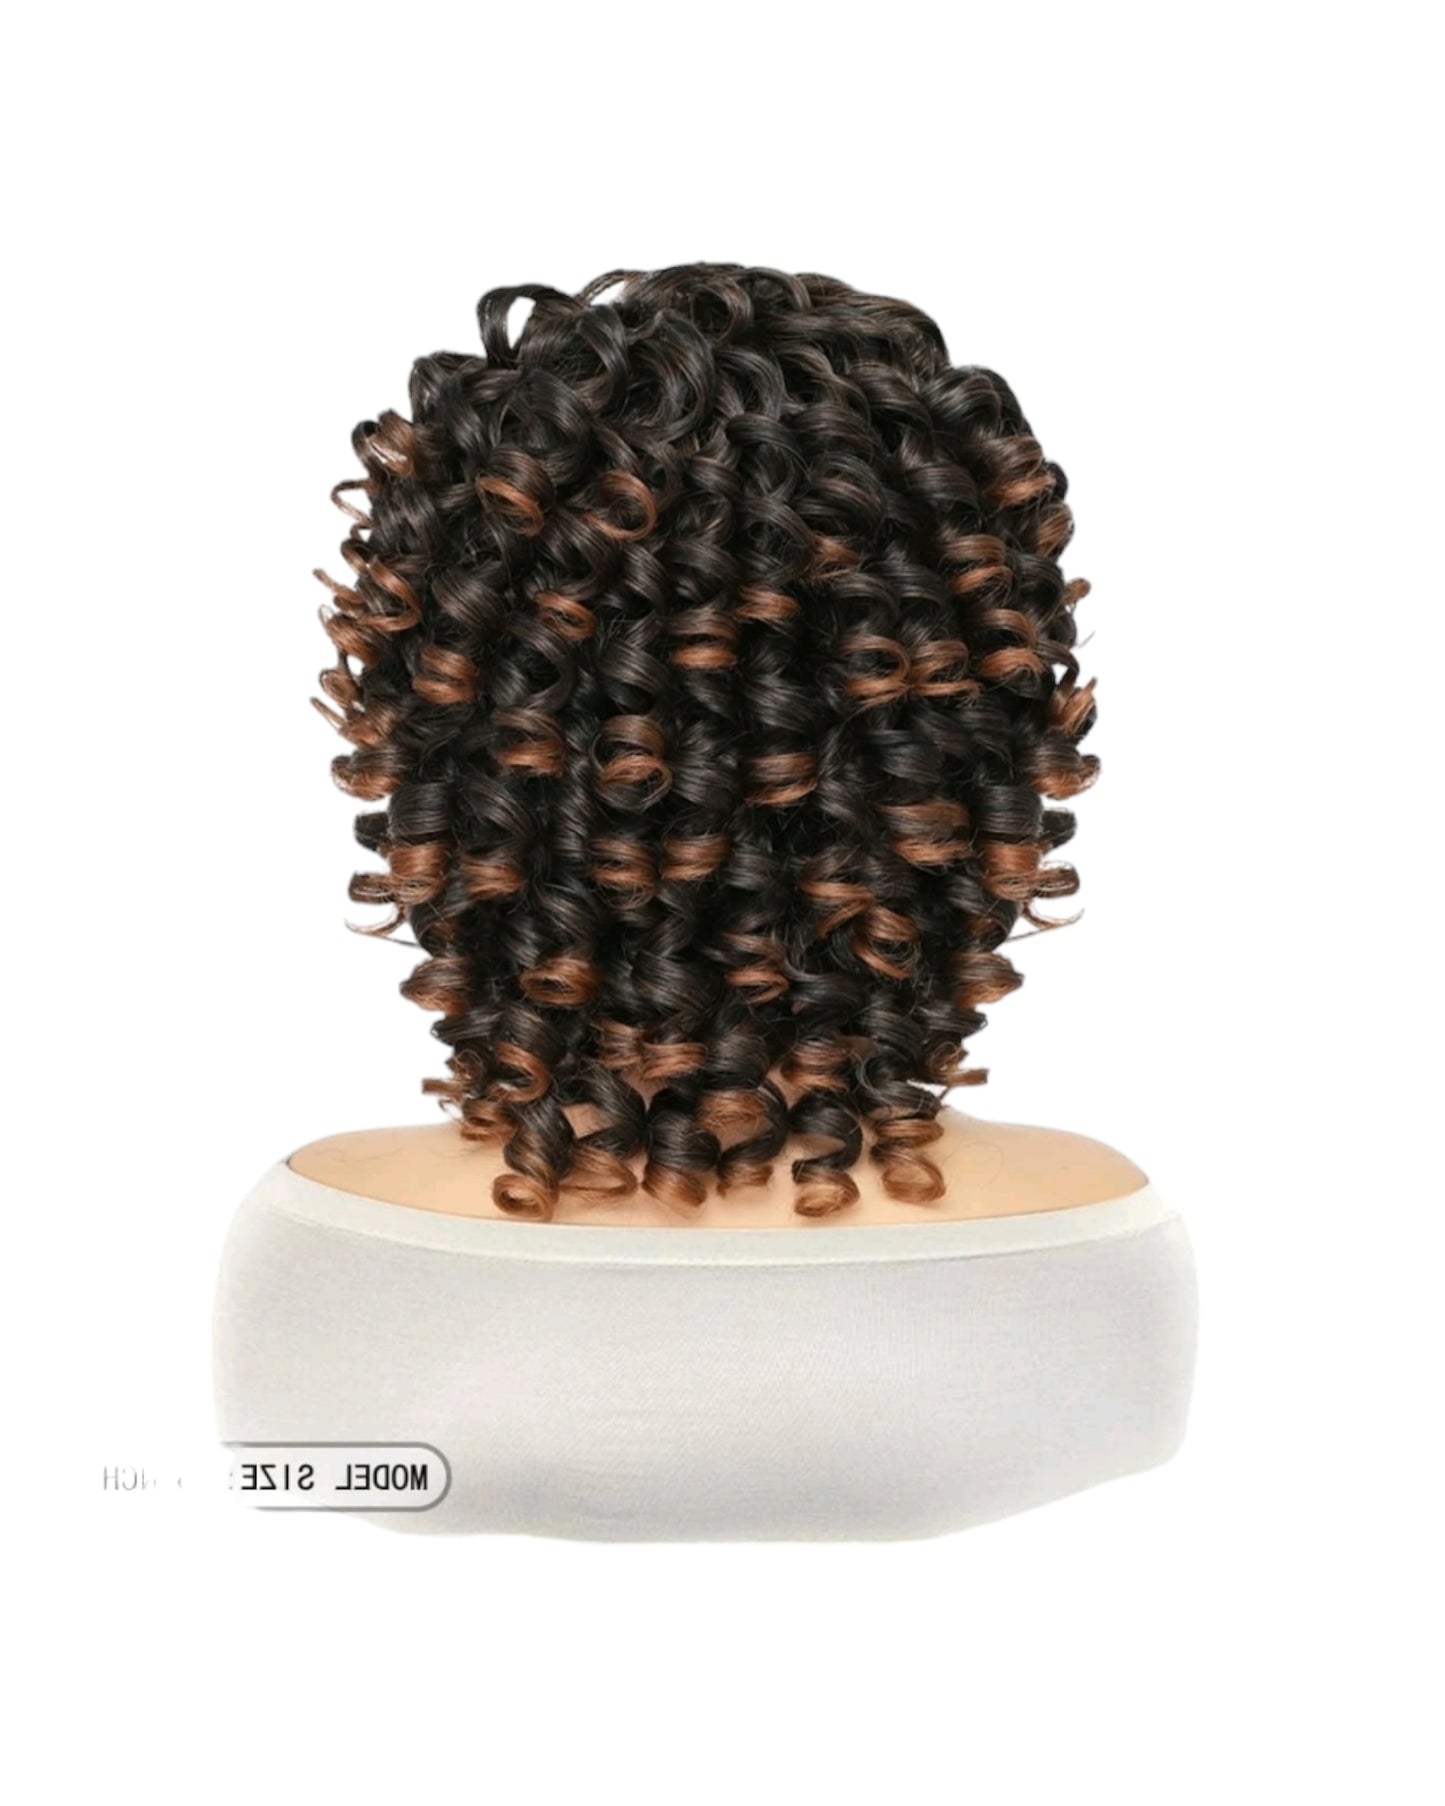 Brown Caramel Curls Bob Style Wig. Precious.